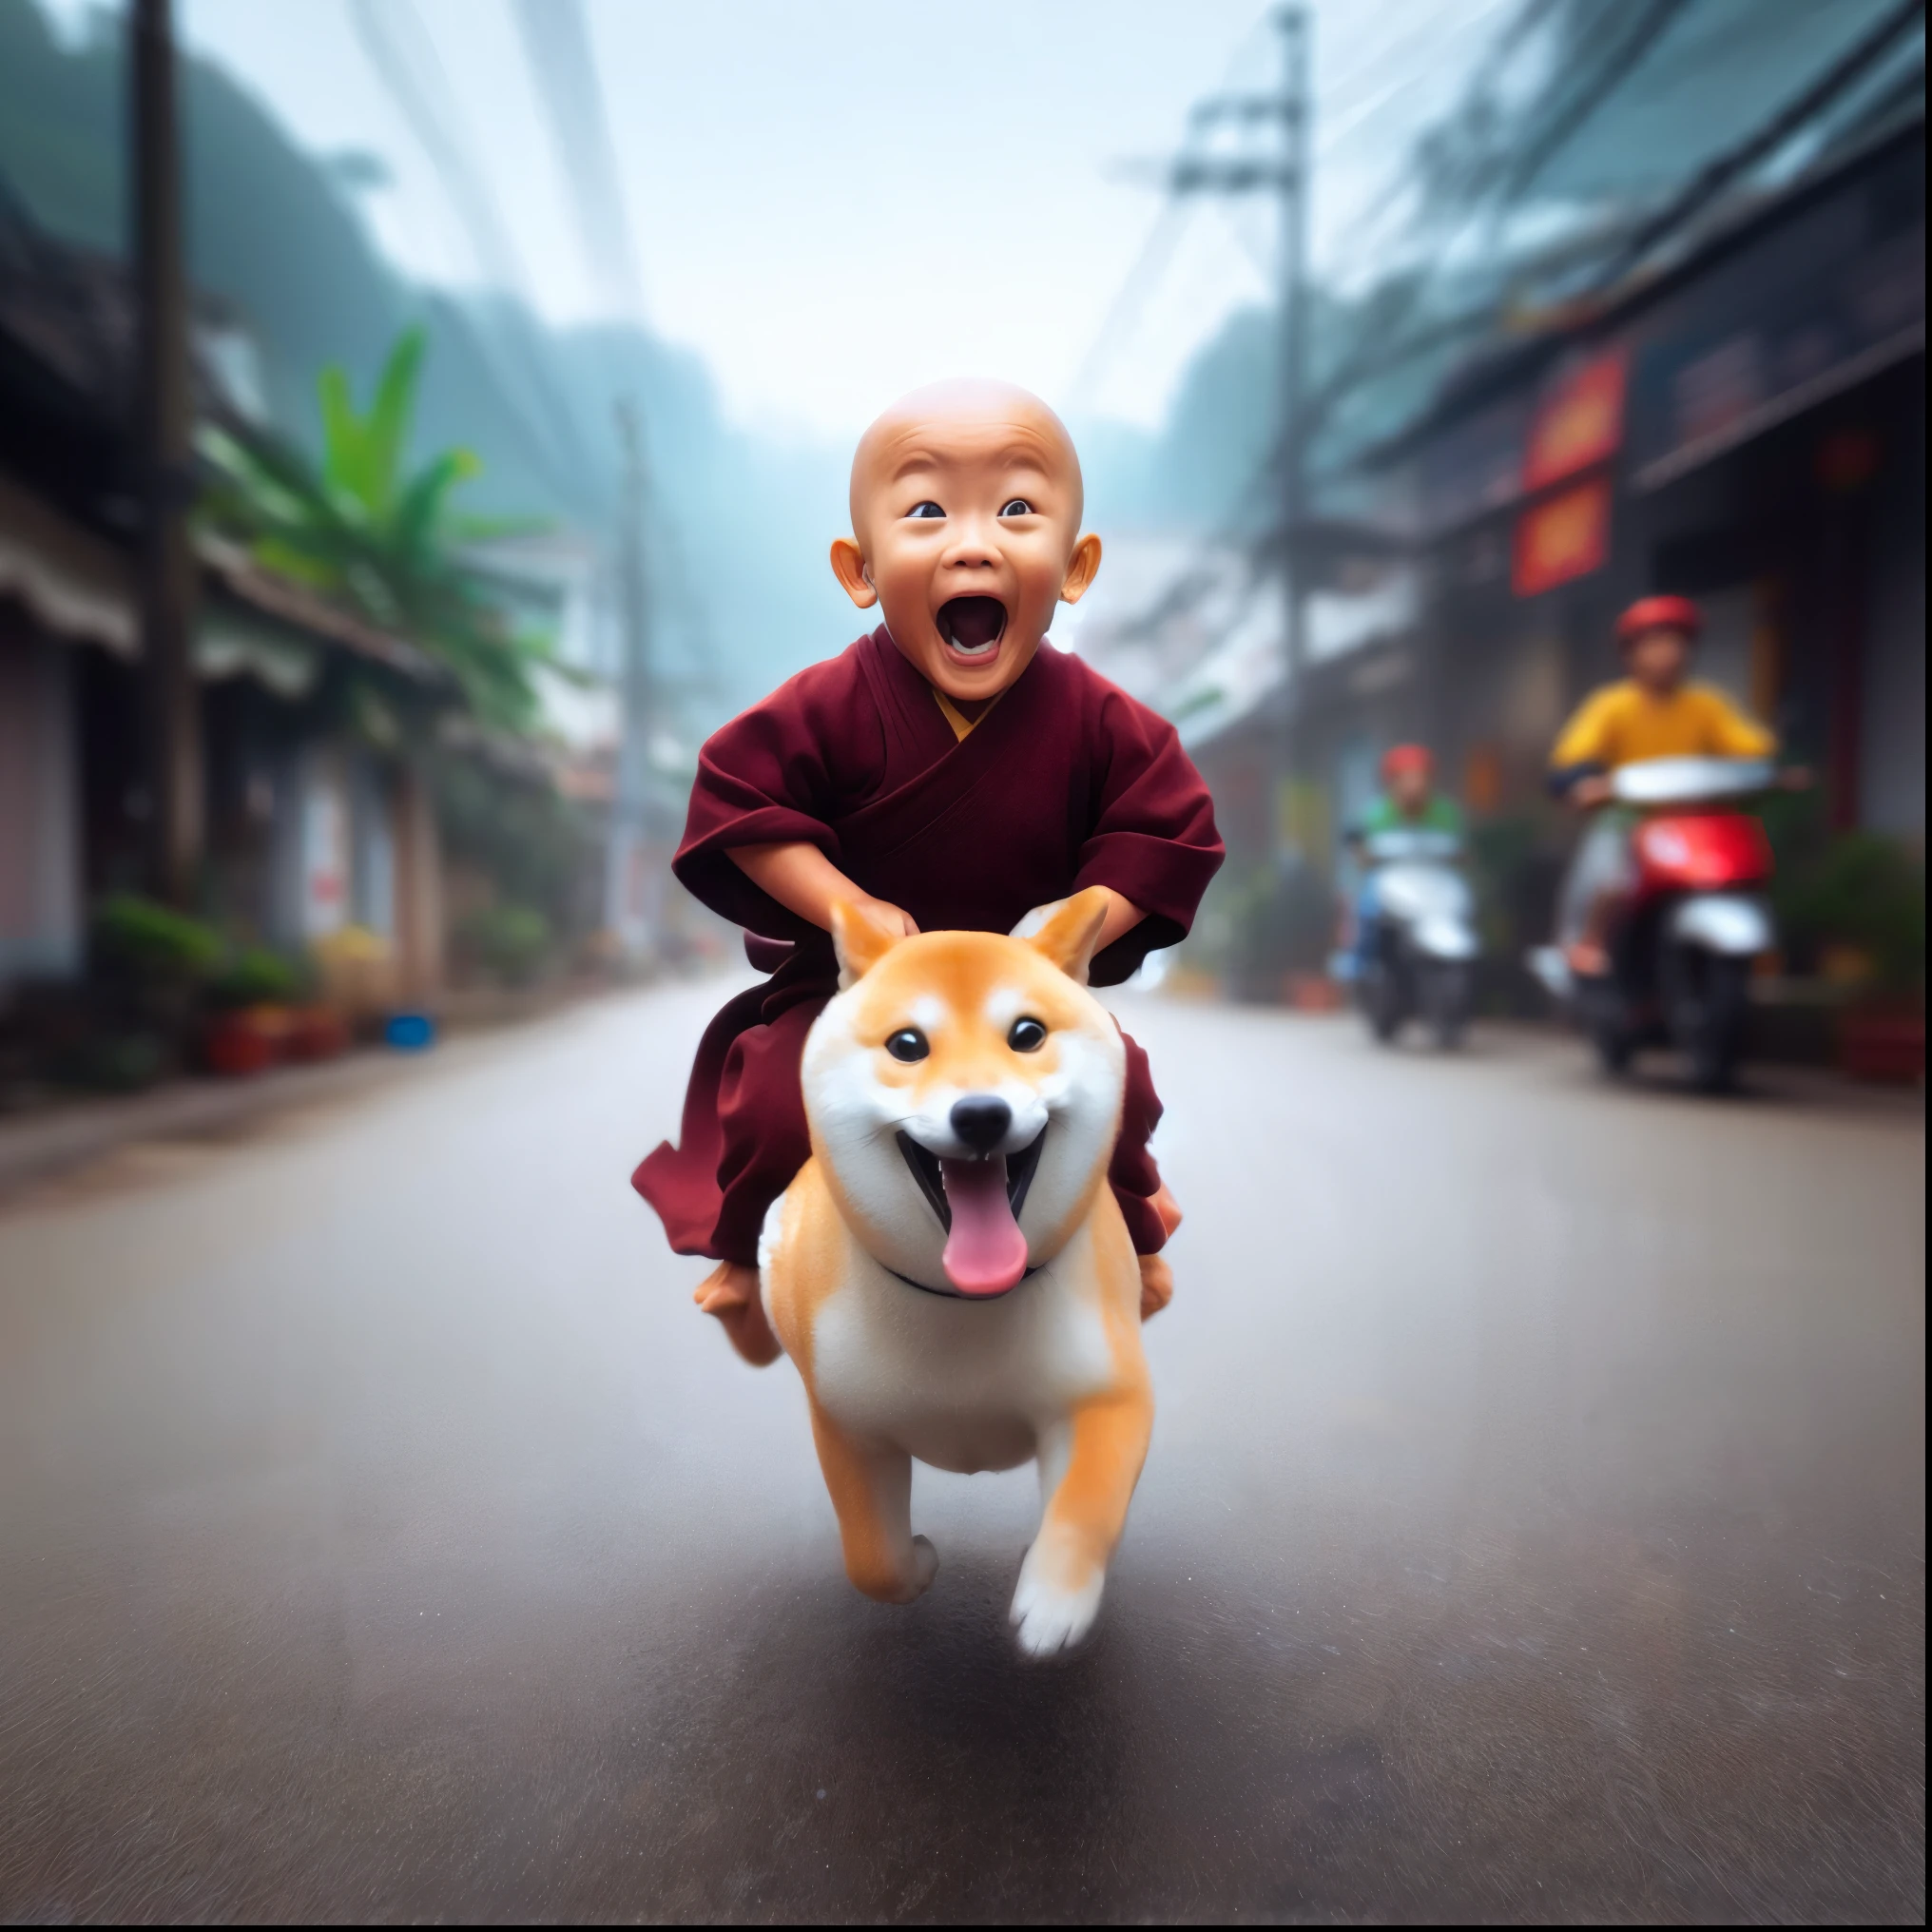 arafed image of a Монах riding a dog on a street, буддист, собака как бог, 2 1 st century Монах, удивительная глубина, дож, буддизм, Потрясающий, со своей гиперактивной собачкой, работа в стиле Гувейза, очаровательная цифровая живопись, Монах, Он очень счастлив, чистая радость, вдохновленный Сибой Коканом